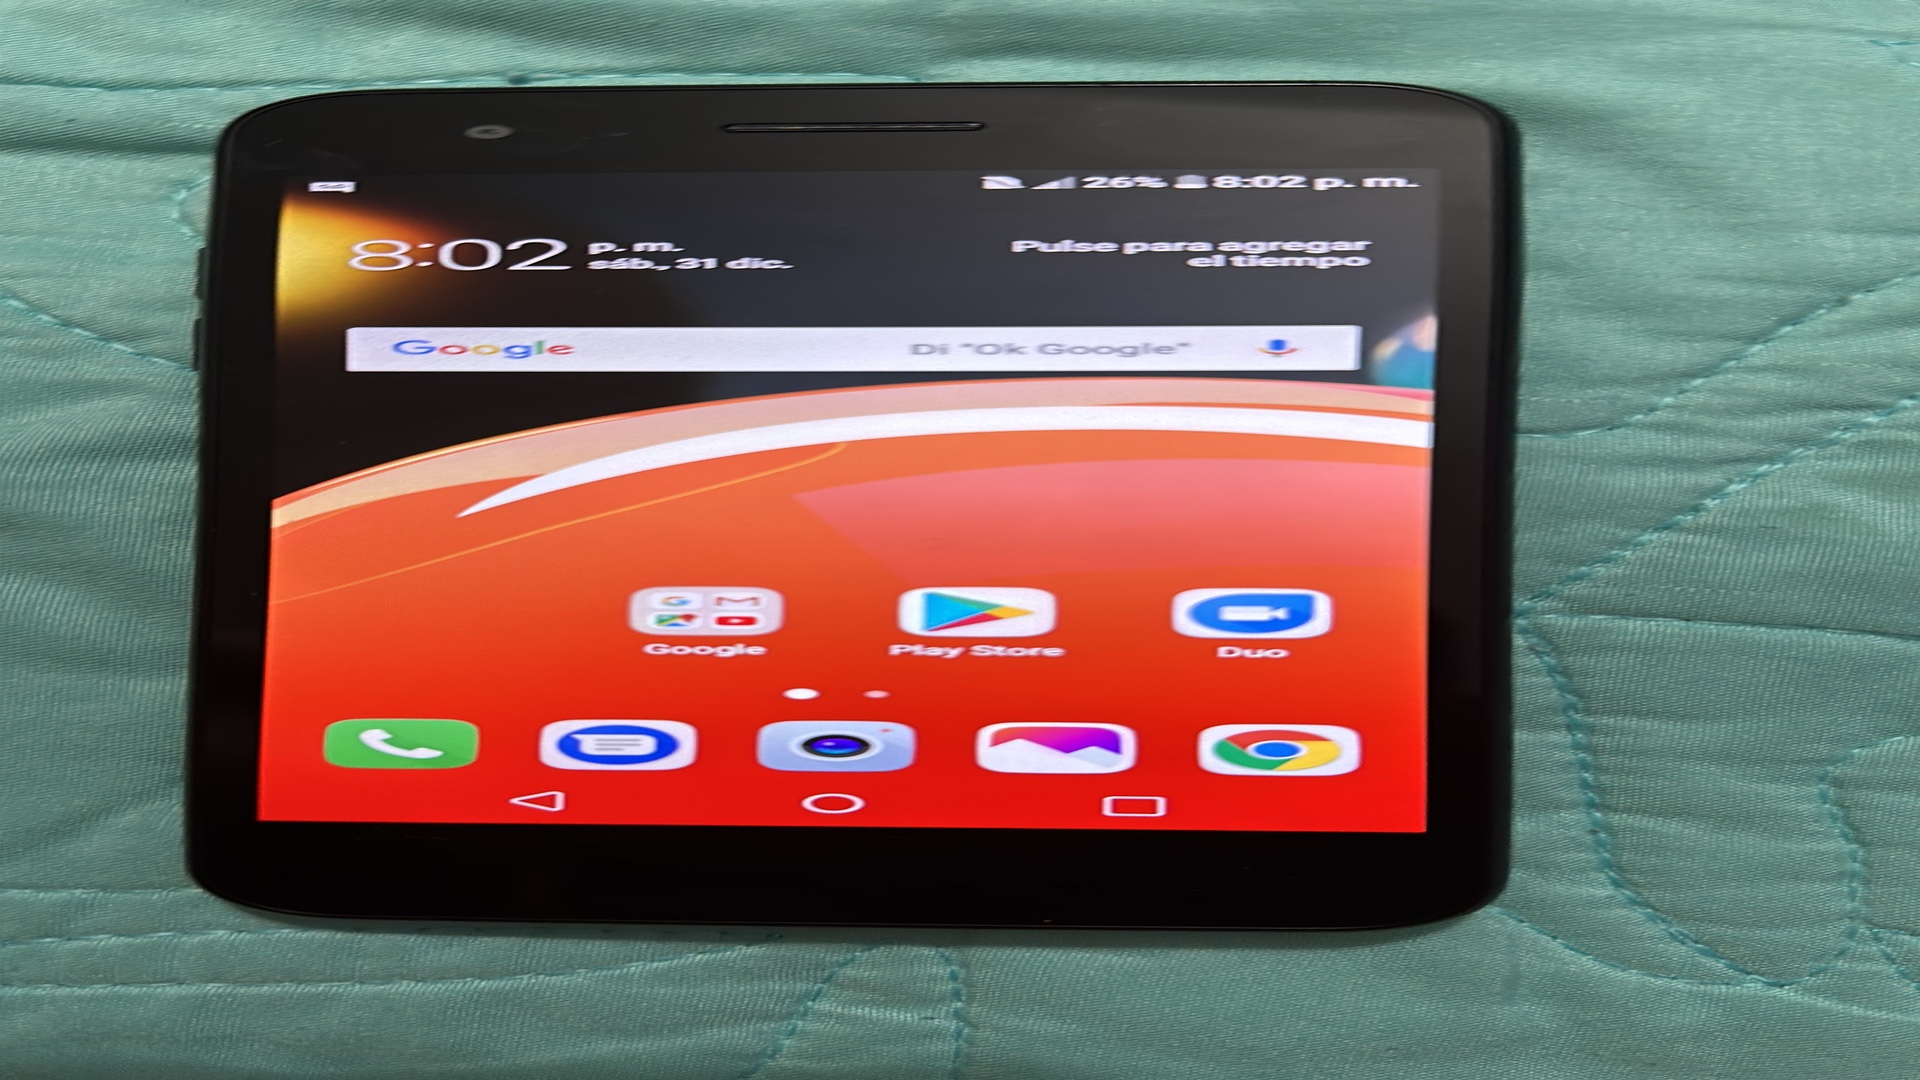 celulares y tabletas - LG SP 200 16 Gb solo interesado bloqueado de compañía 3 disponible como nuevoo
 3